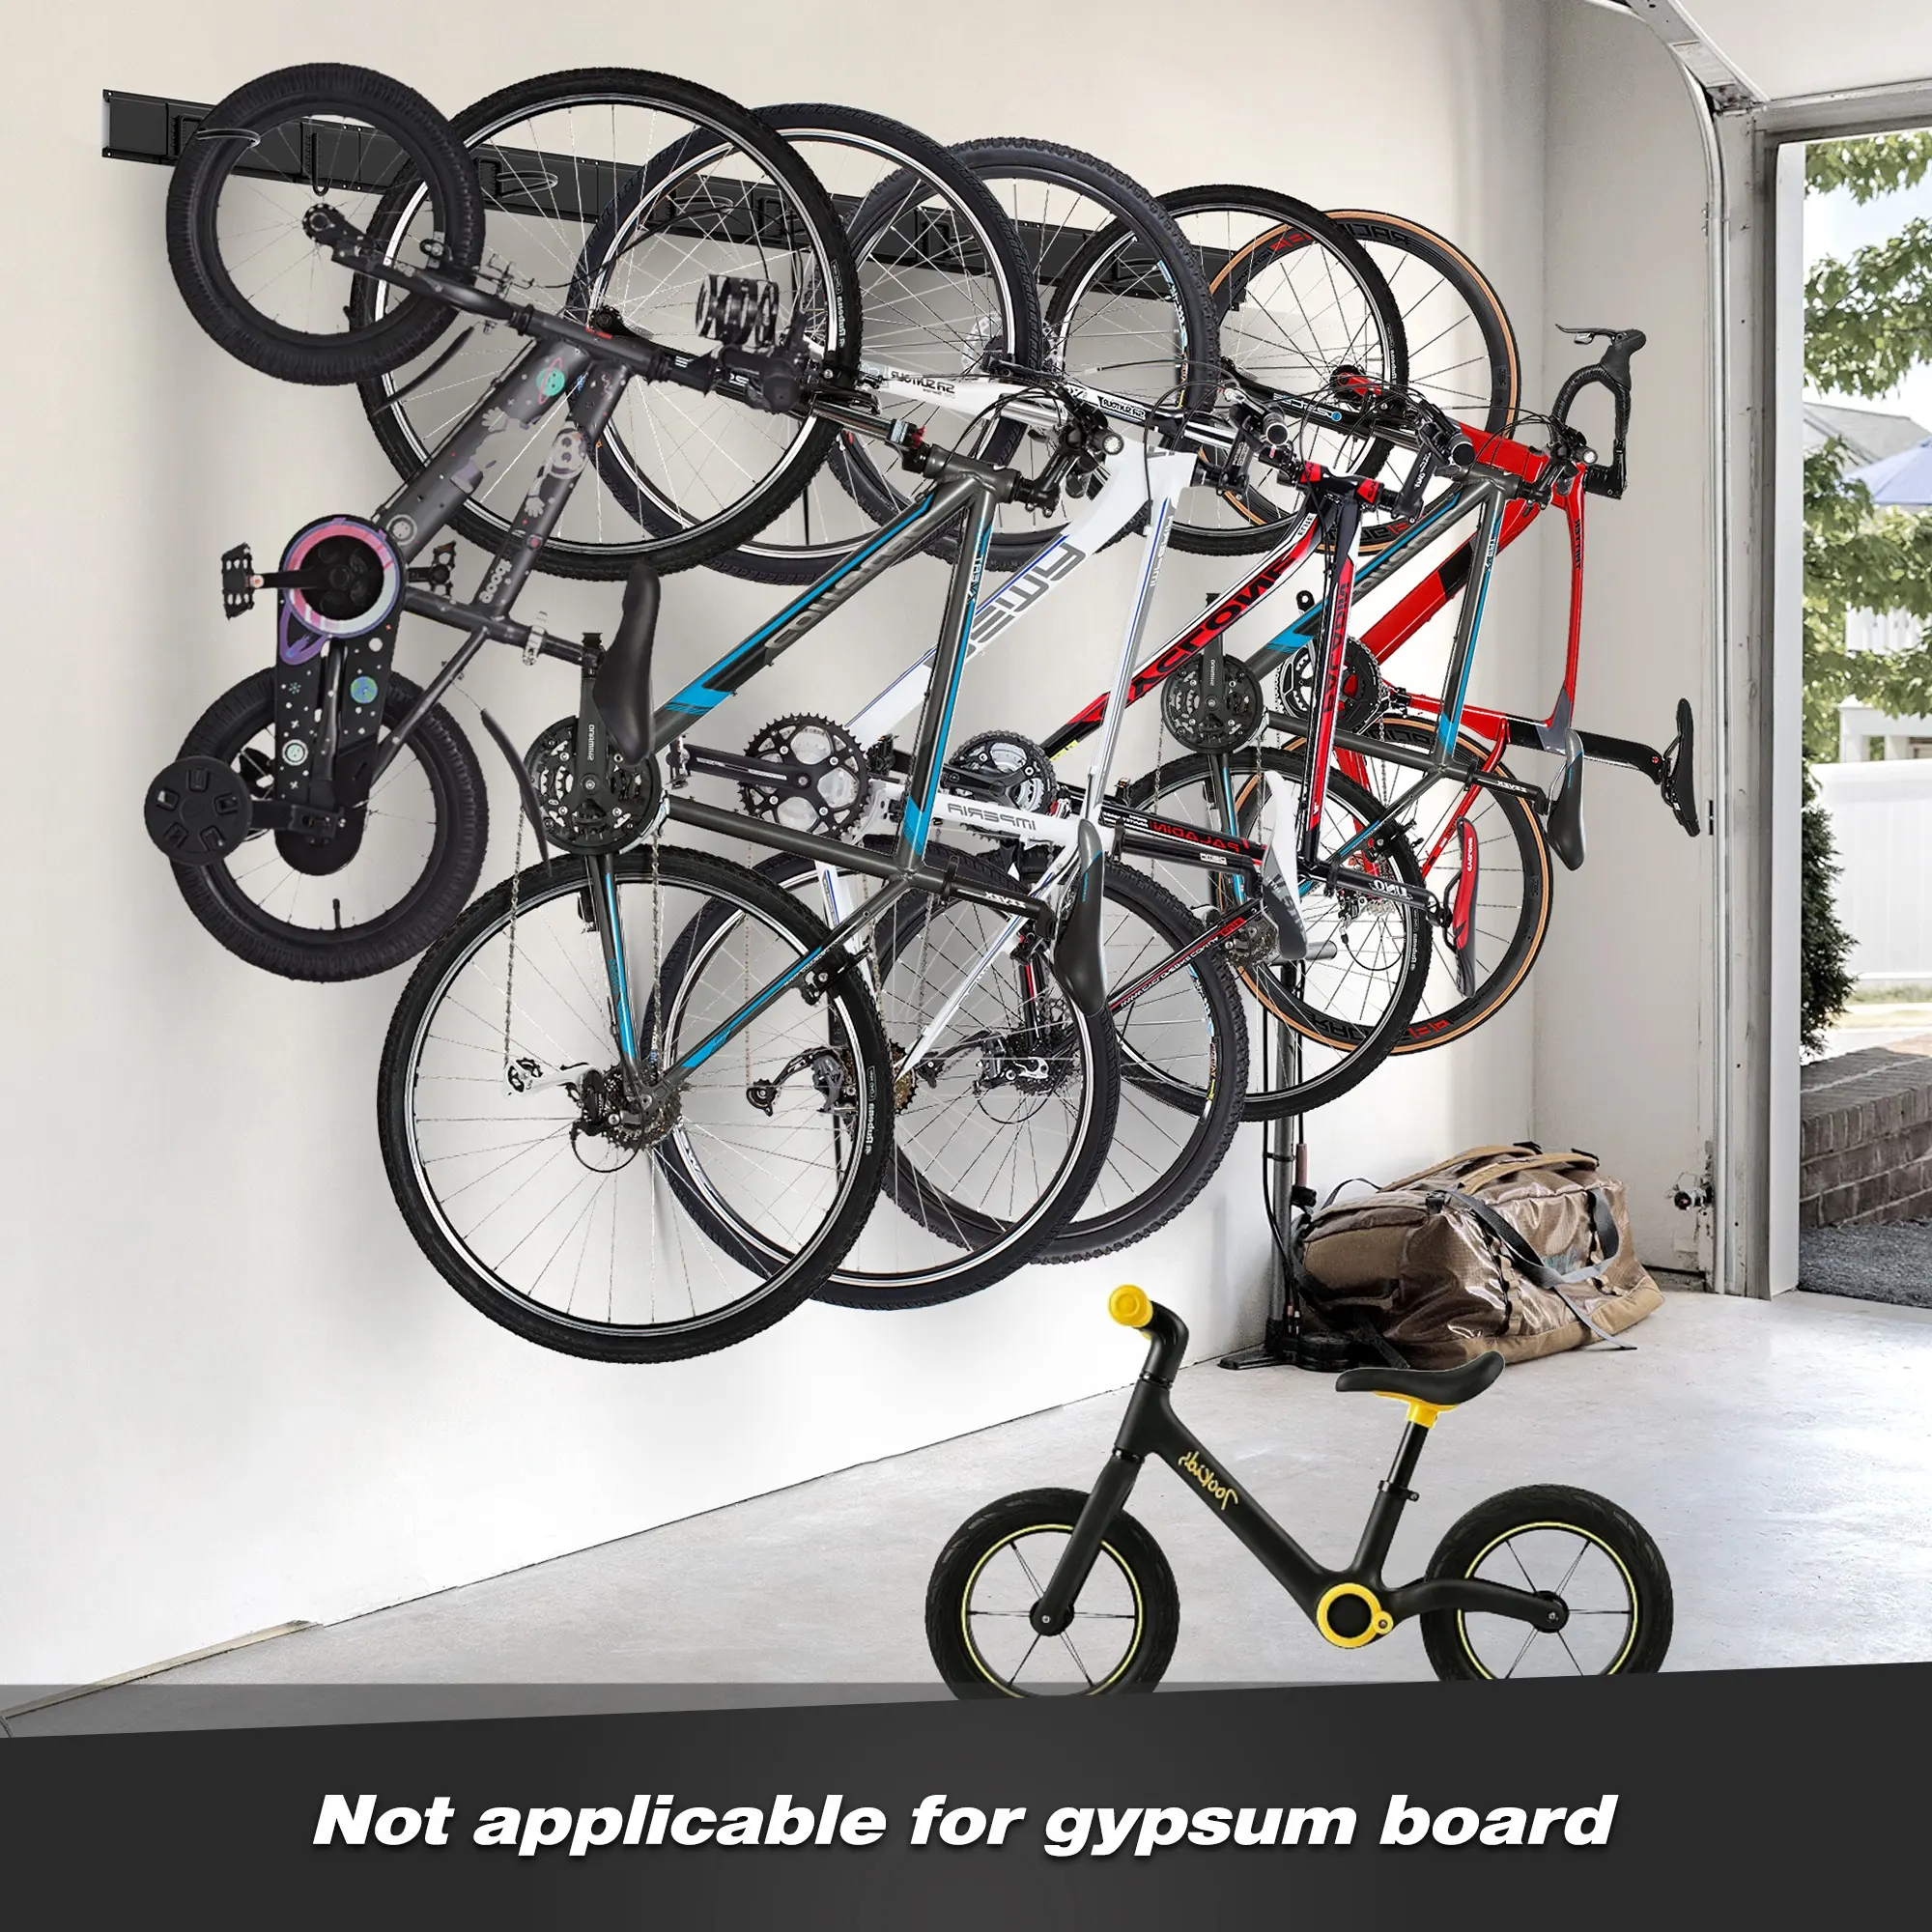 Organisateur de vélo de garage intérieur en acier durable, support de vélo pour 6 vélos, support mural pour vélo de garage, support de rangement pour vélo